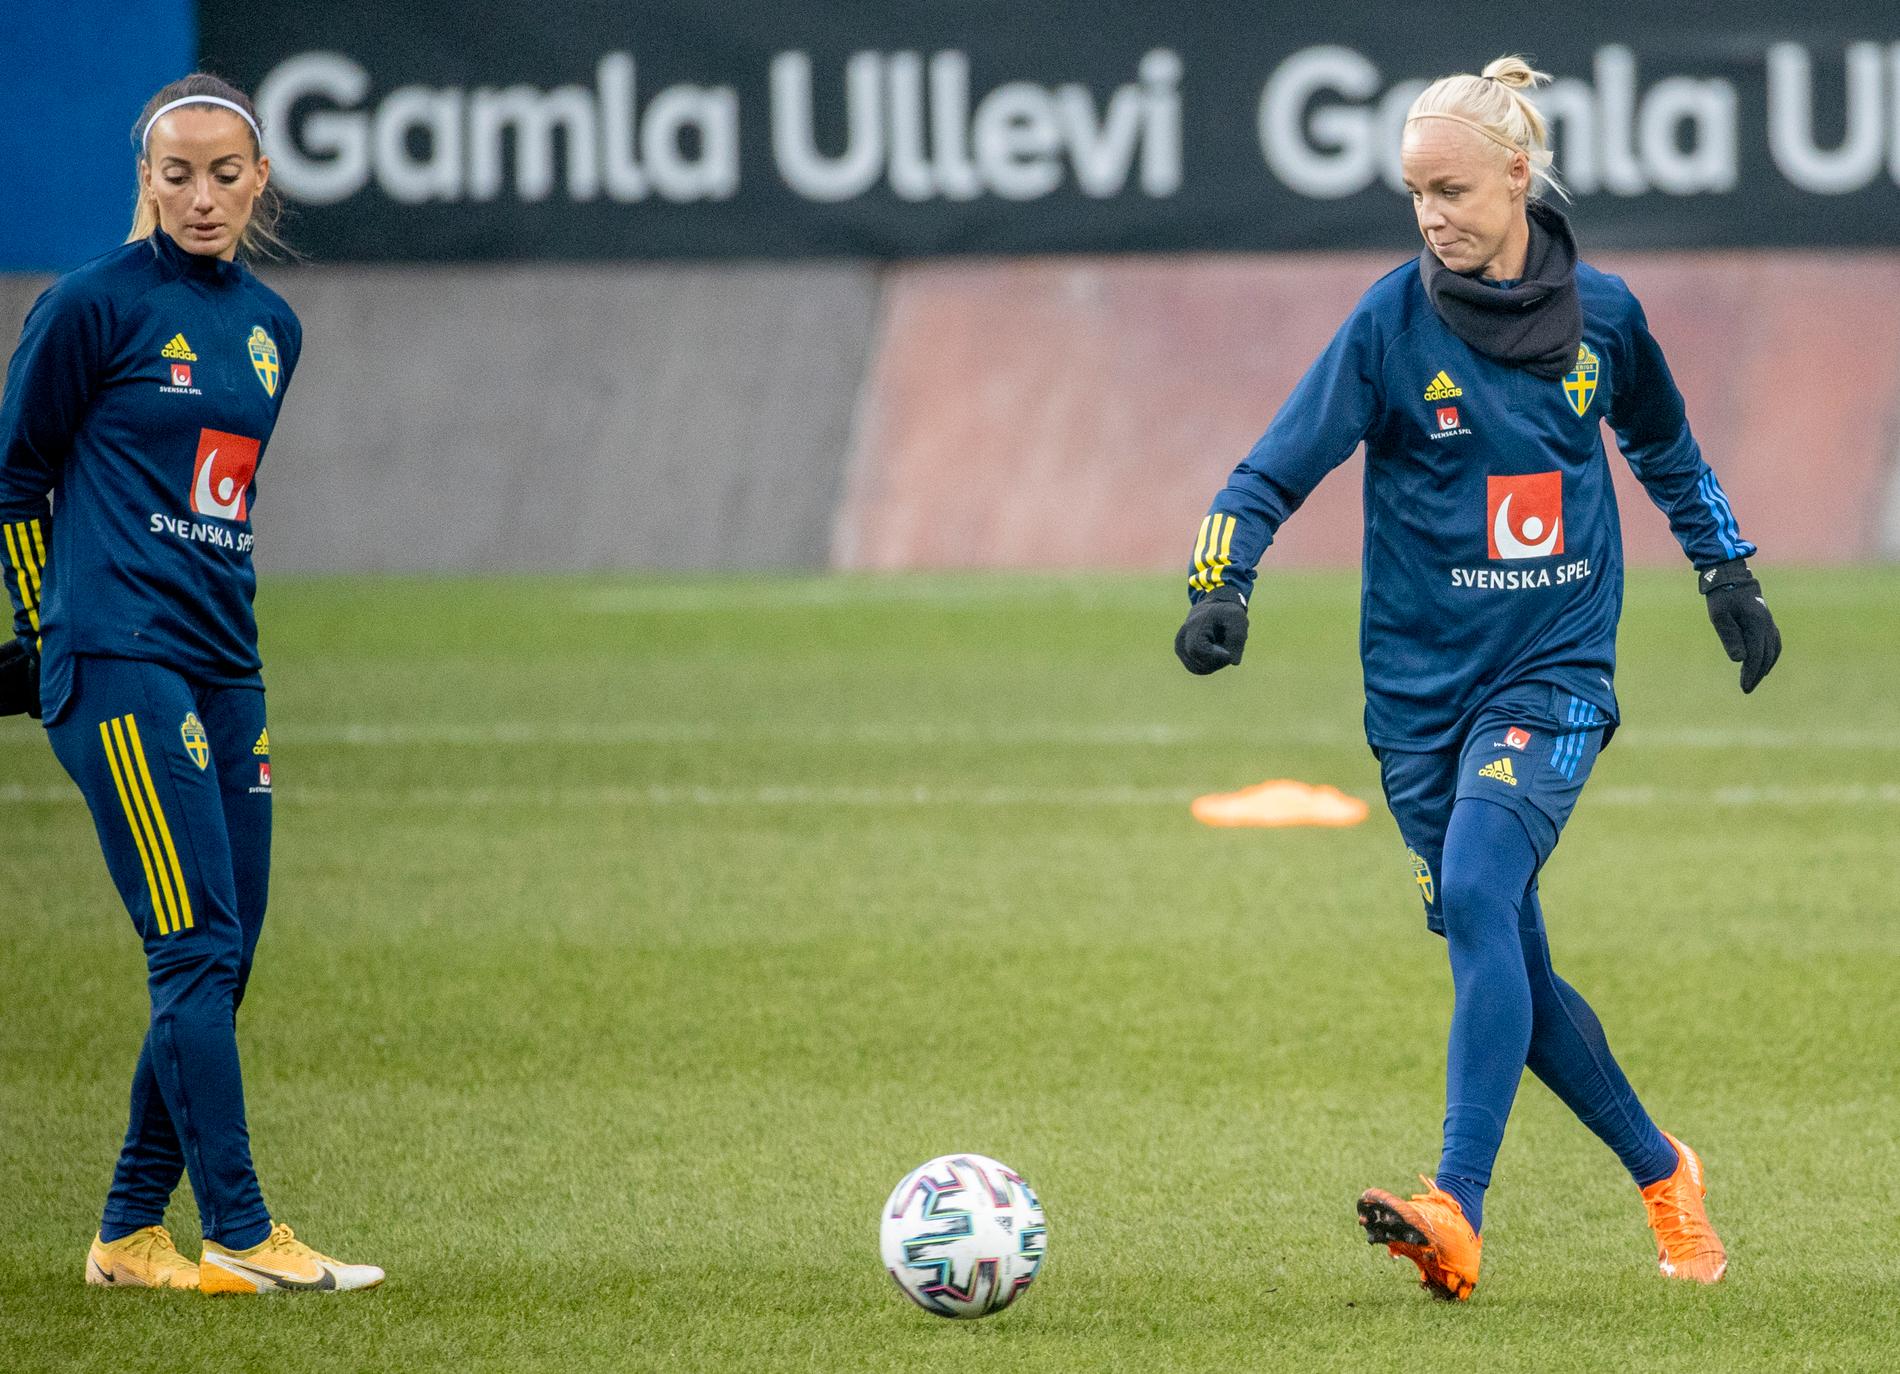 Ska Kosovare Asllani och Caroline Seger leda Sverige till storseger i EM-kvalmatchen mot Lettland på Gamla Ullevi i kväll? Mycket talar för det.